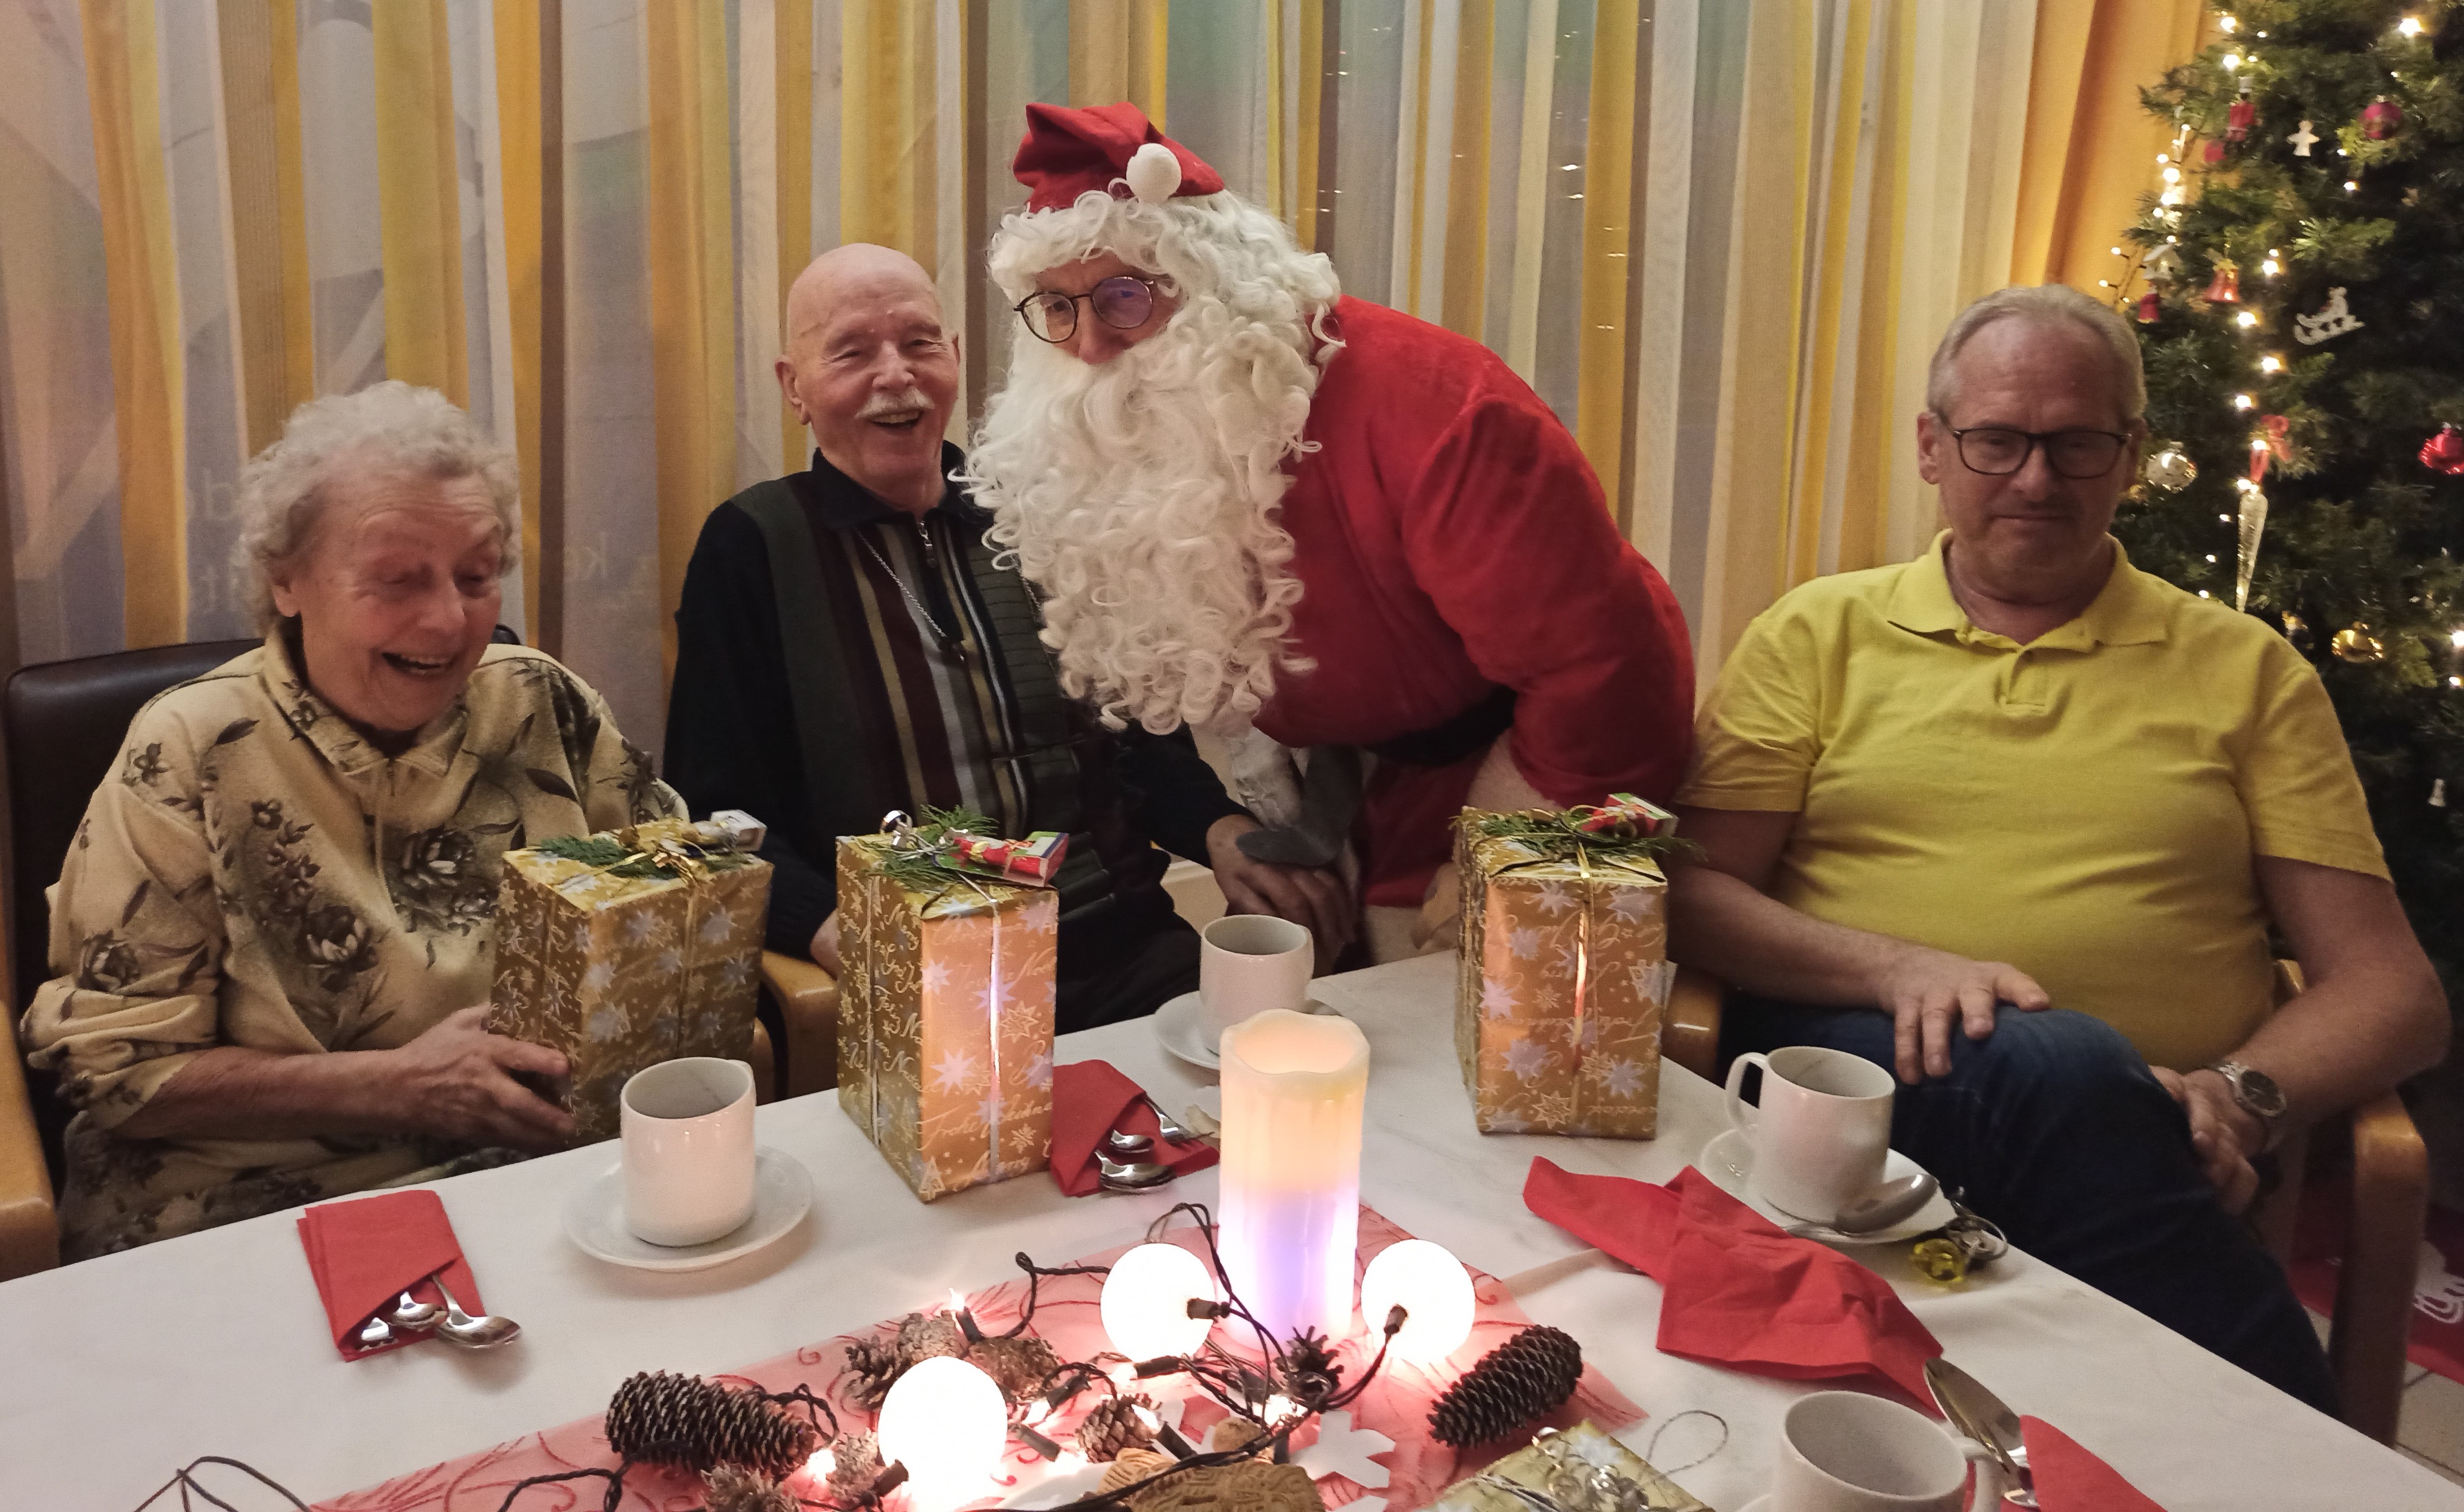 Der Weihnachtsmann kam zur Bescherung in die ProCurand Seniorenresidenz Cottbus.